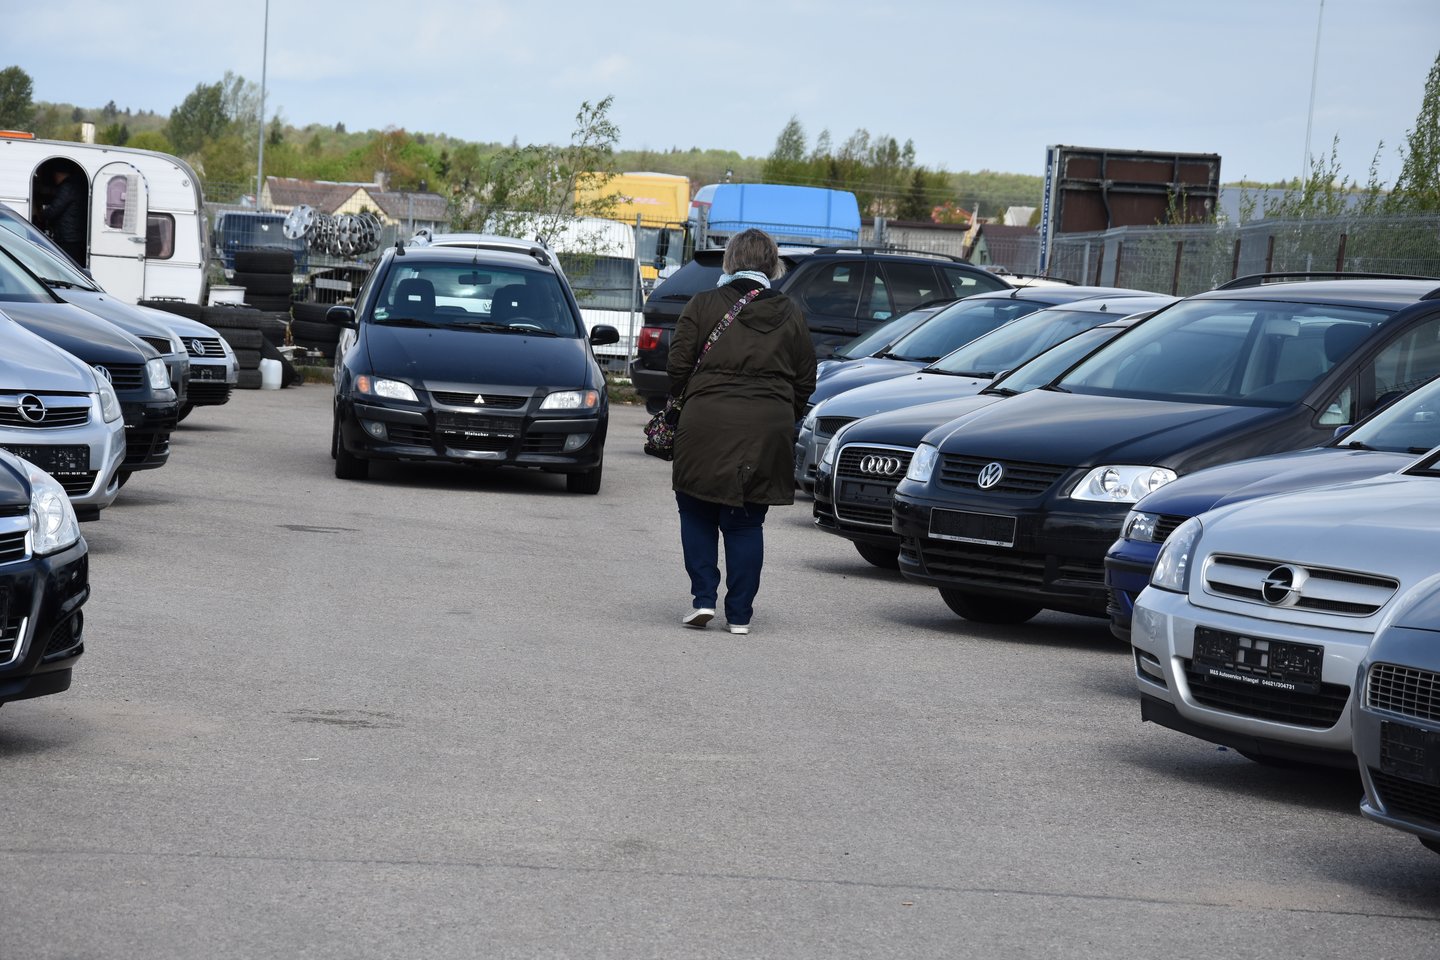 Marijampolės automobilių turgus šiemet merdėja – pardavėjų jame darbo dienomis daugiau nei pirkėjų.<br>A.Srėbalienės nuotr.